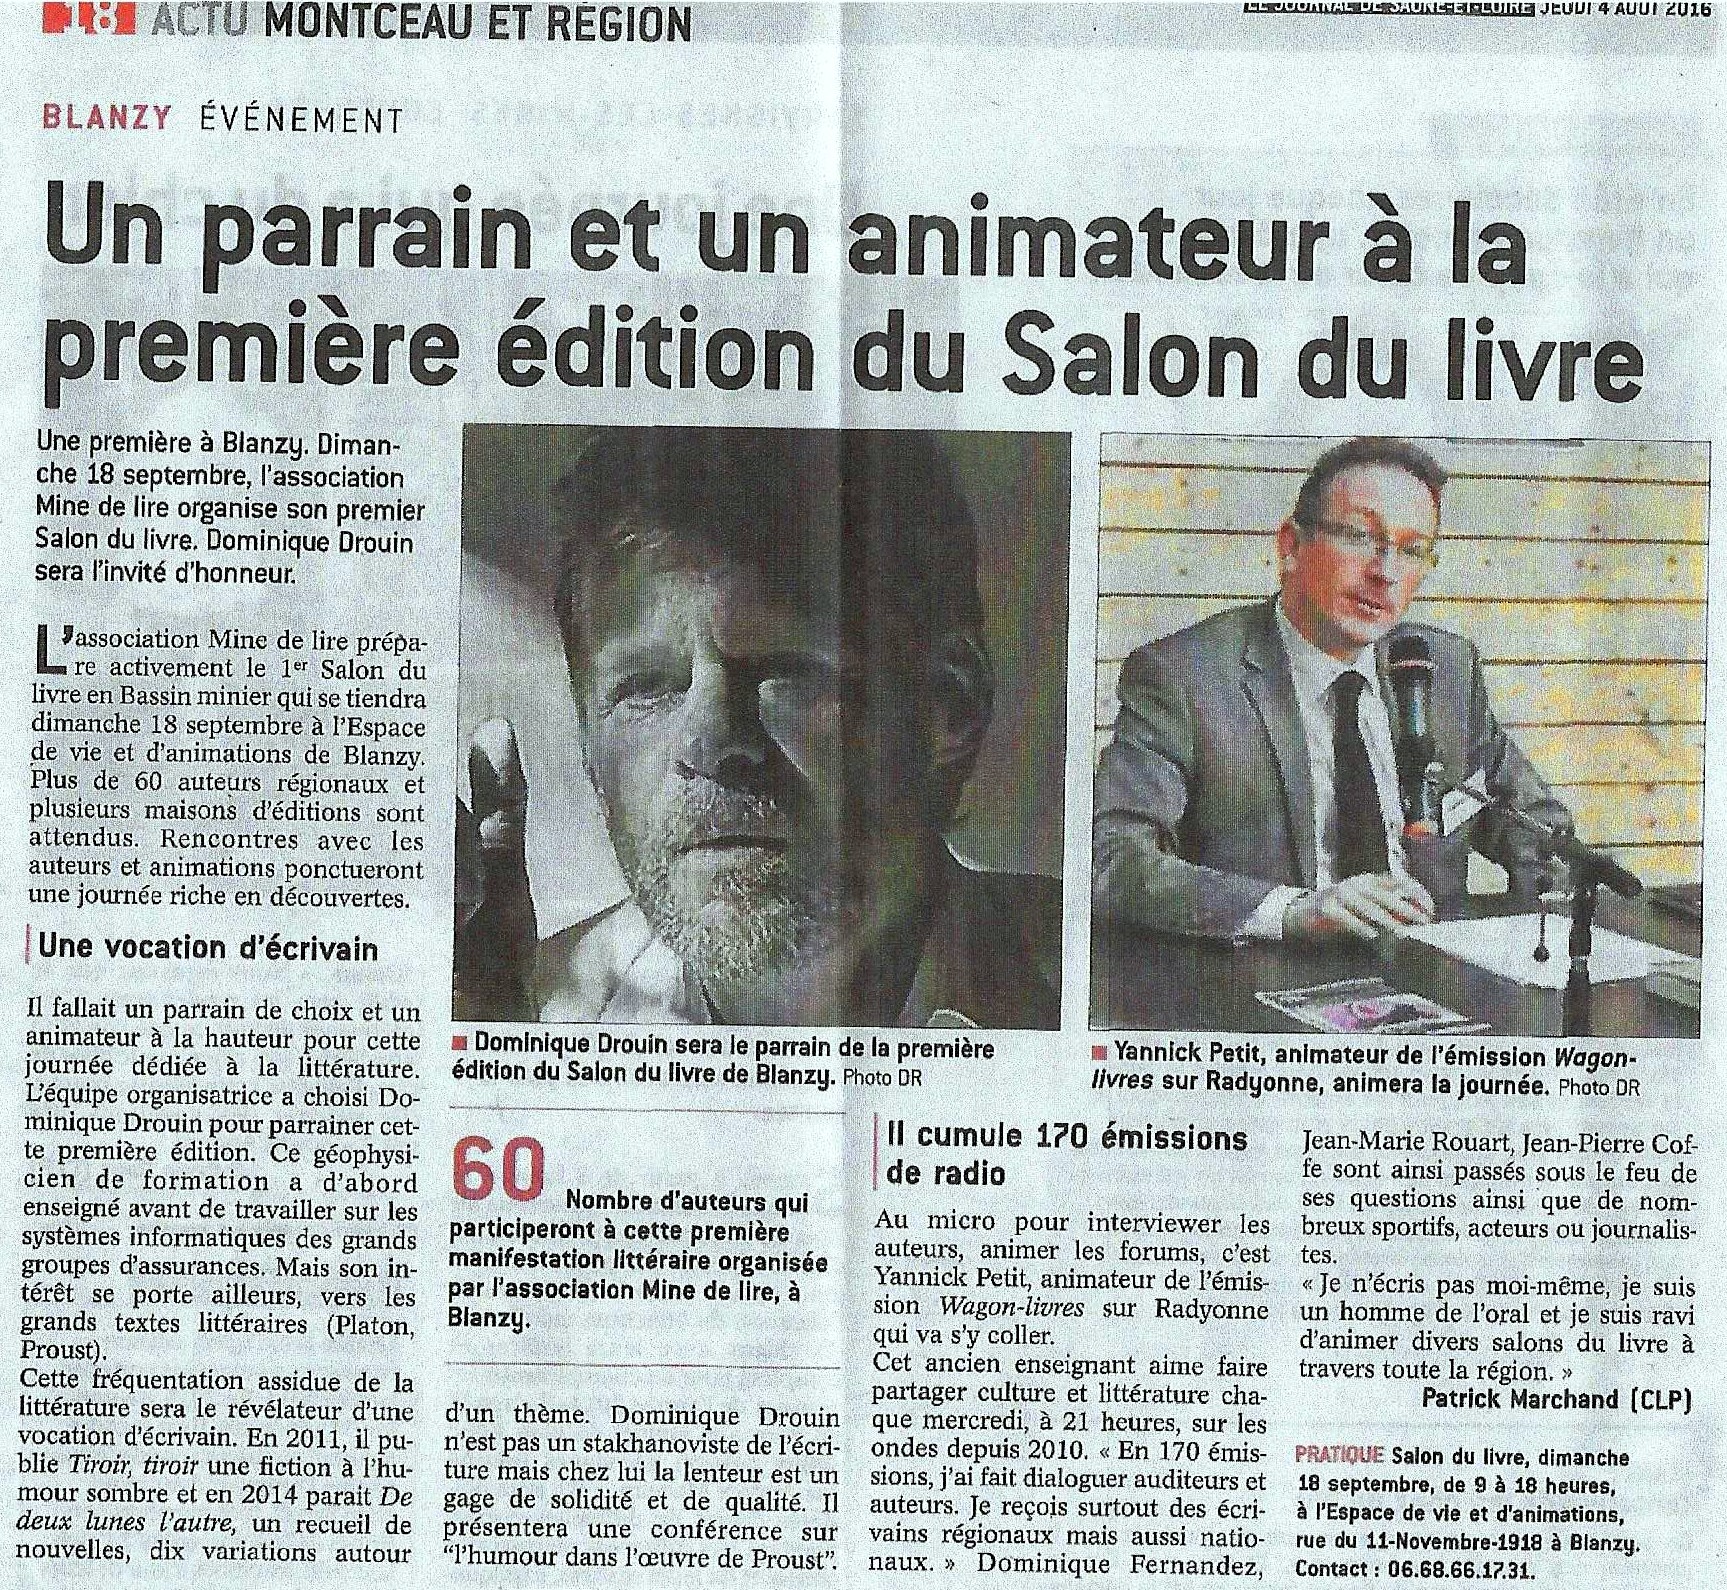 Article Journal de Saône-et-Loire 4 août 2016.